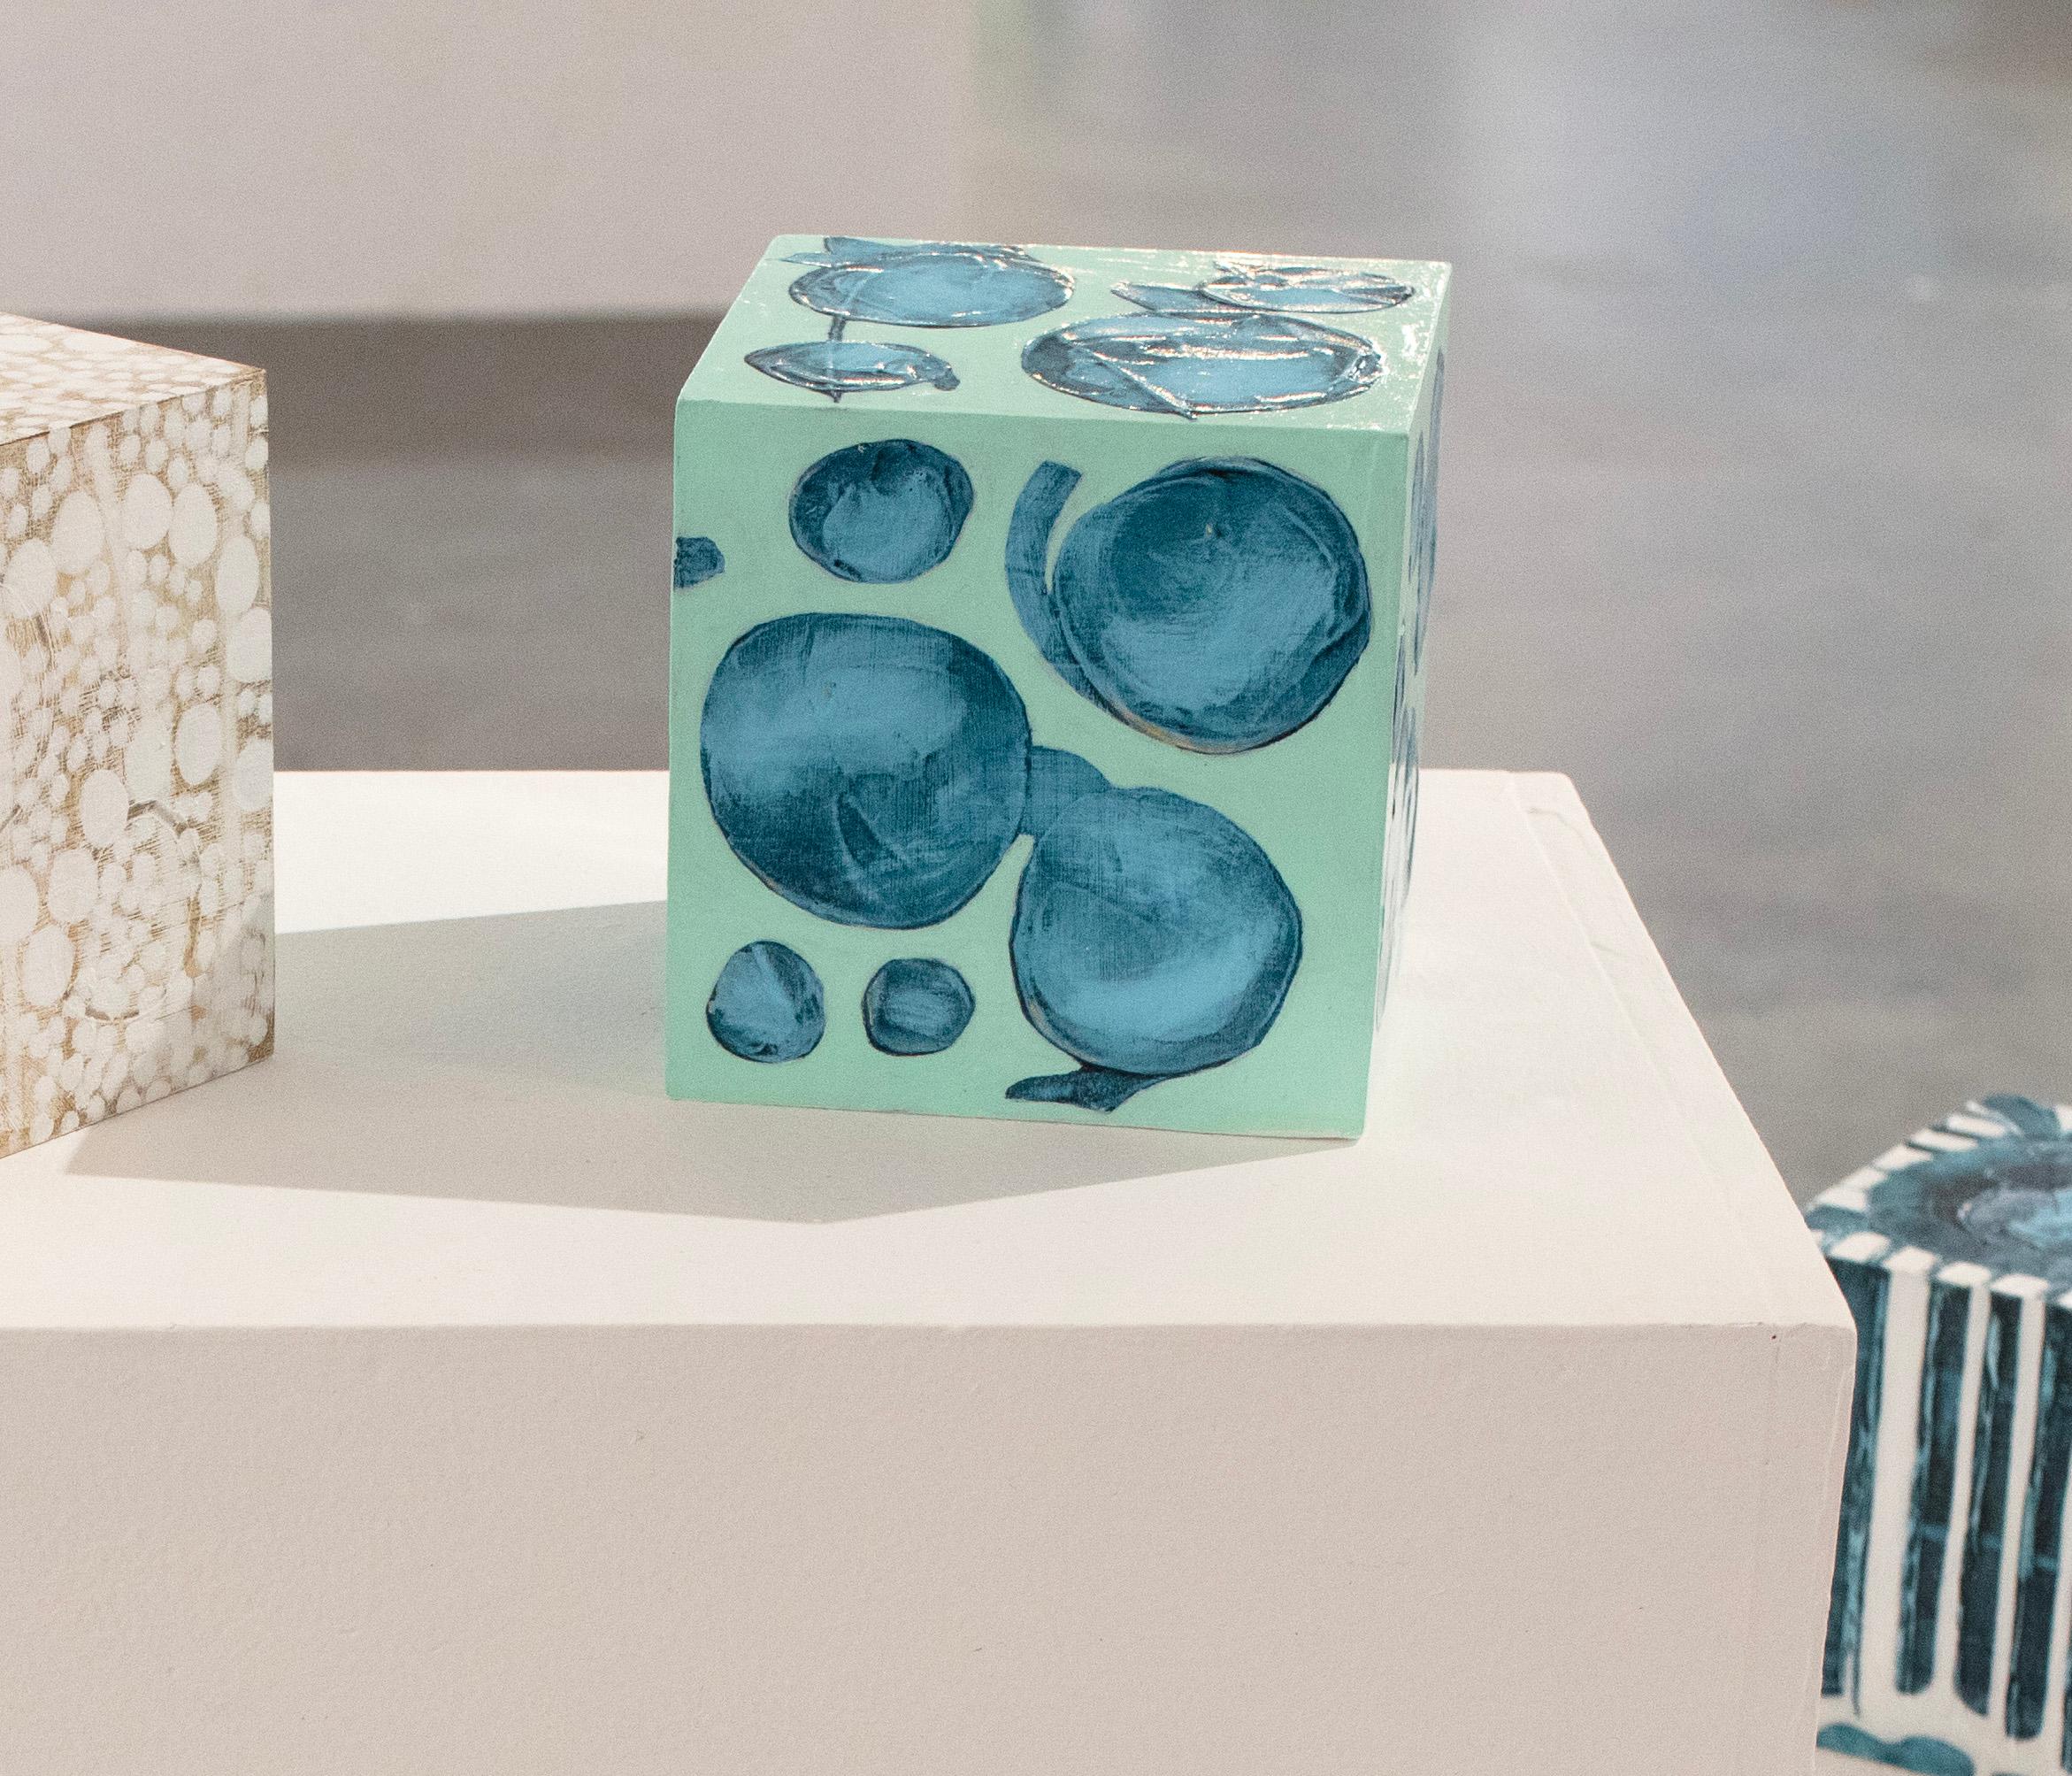 Ce cube sculptural de 5 pouces peint à la main par Sofie Swann est réalisé avec de la peinture acrylique et du gesso sur bois. Il présente une palette froide avec un fond vert turquoise et des formes circulaires sarcelles peintes sur la surface. Il